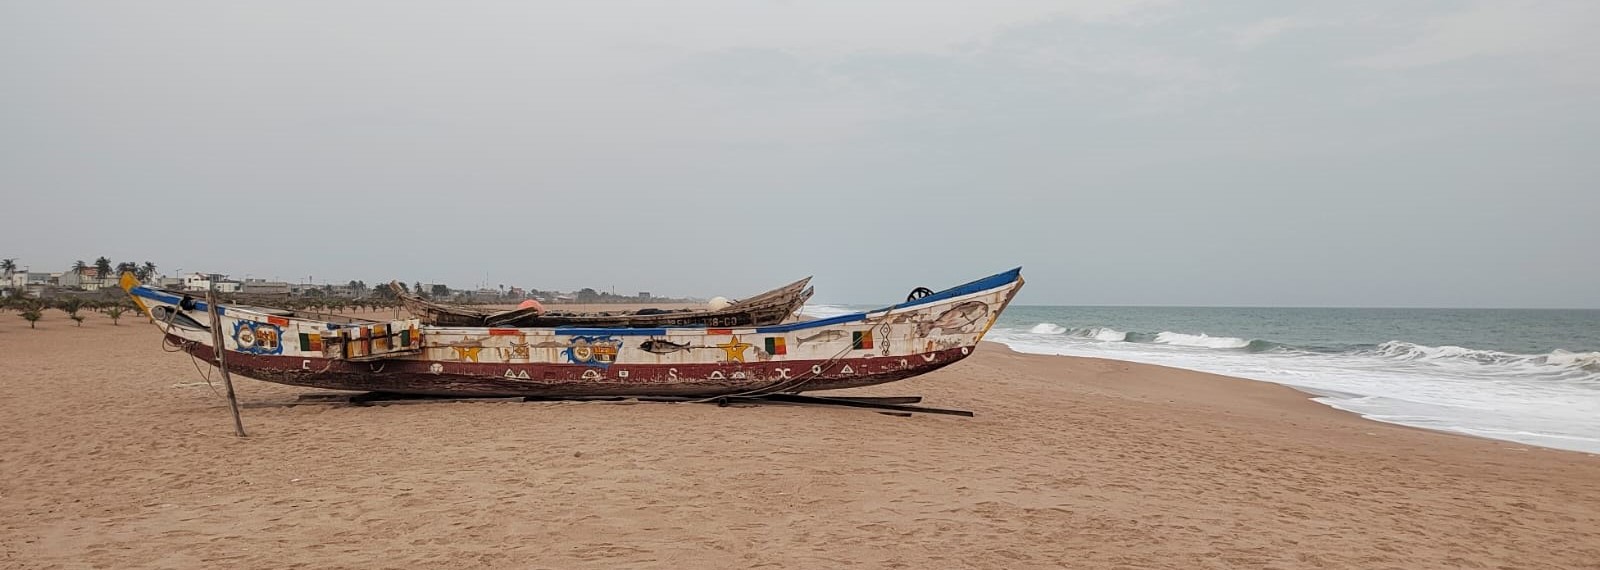 a boat lying on a beach